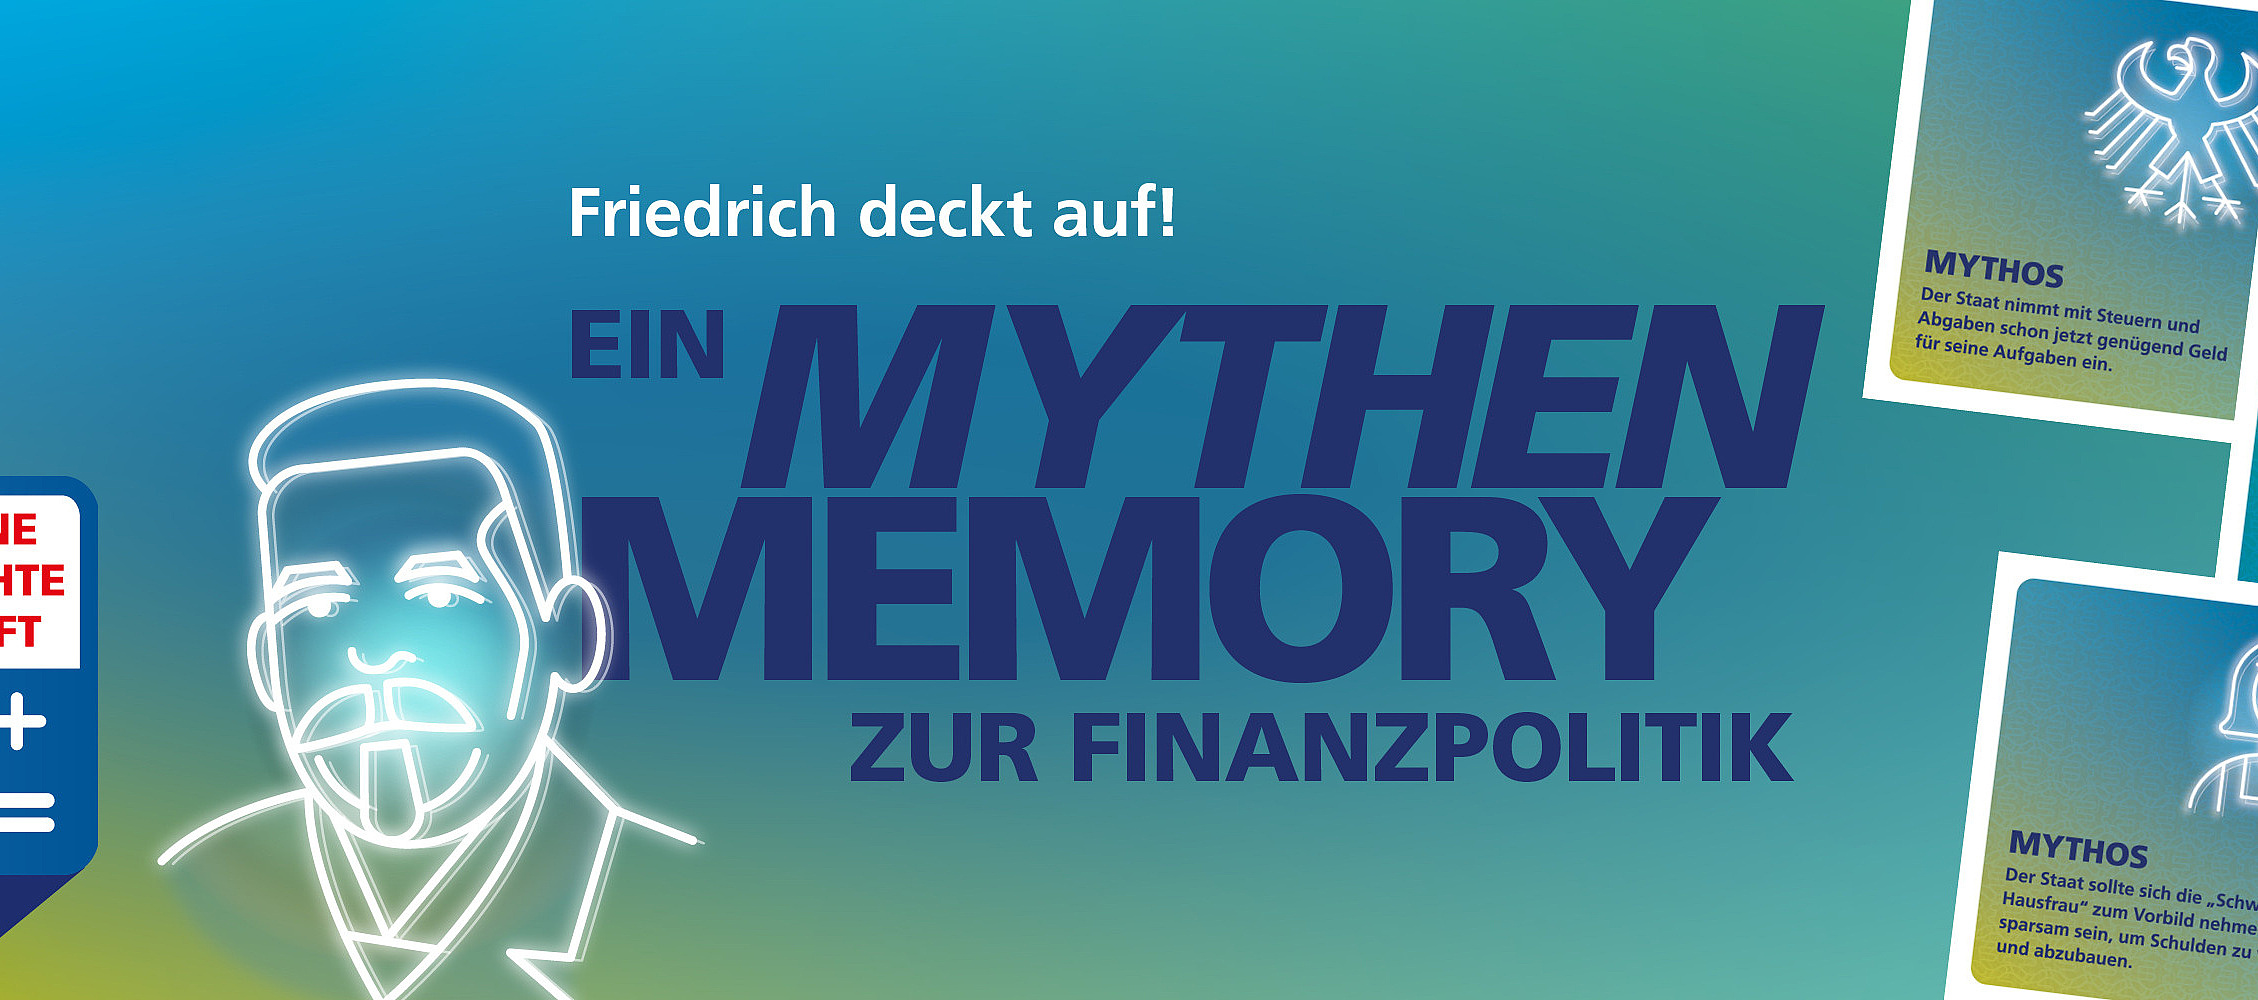 Es werden links ein stylisierter Friedrich Ebert und Rechts 3 Memory Karten gezeigt. Text: Friedrich deckt auf! Ein Mythen Memory zur Finanzpolitik